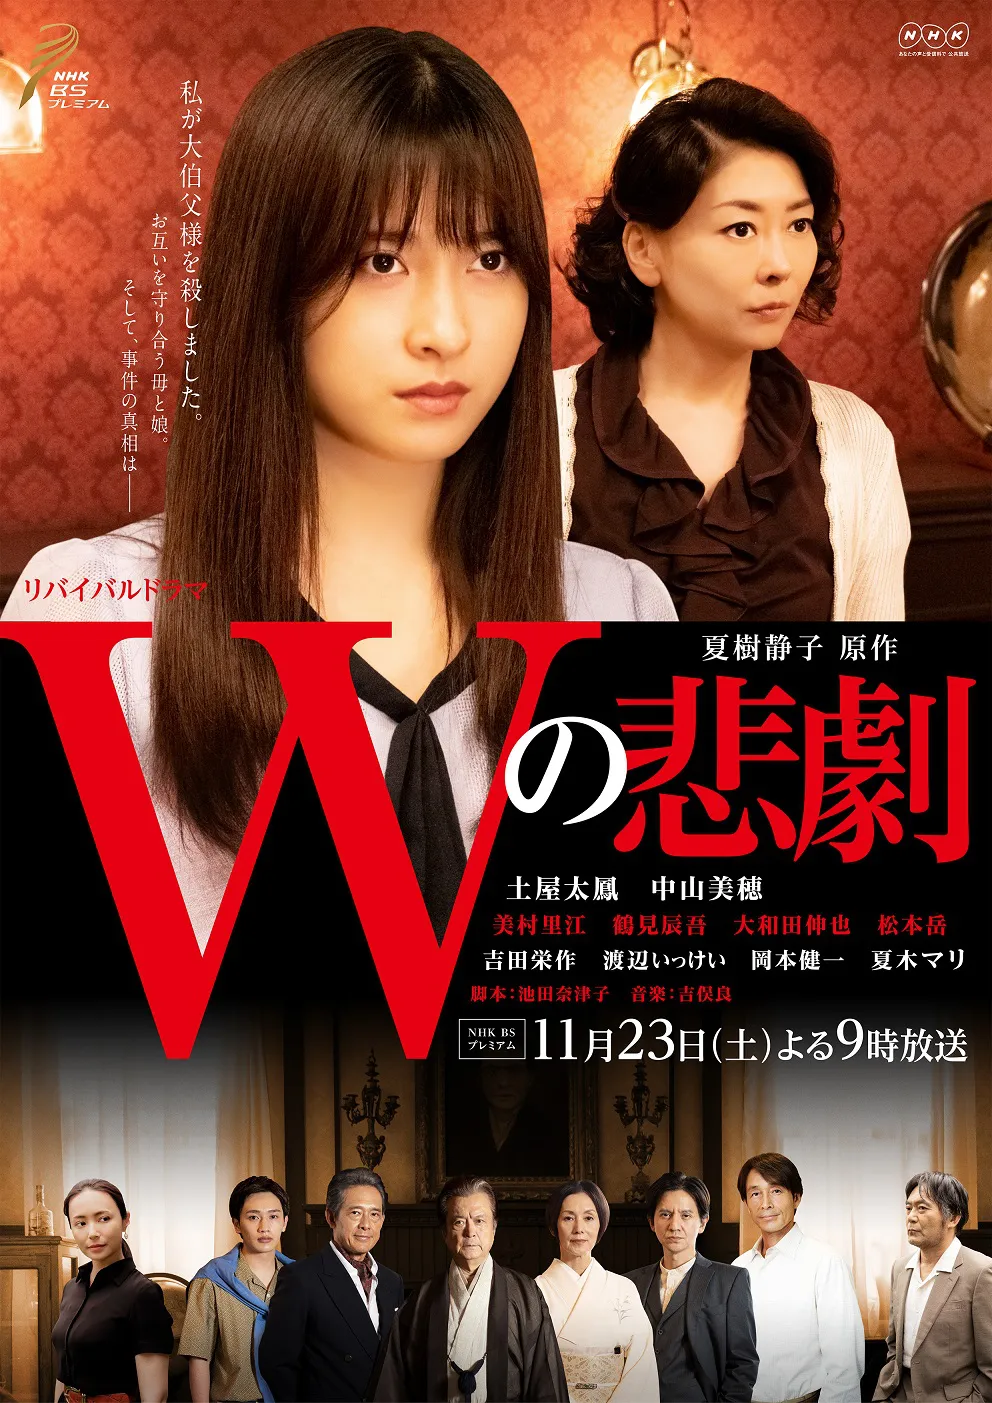 11月23日(土)に放送される「Wの悲劇」のメインビジュアルが公開された